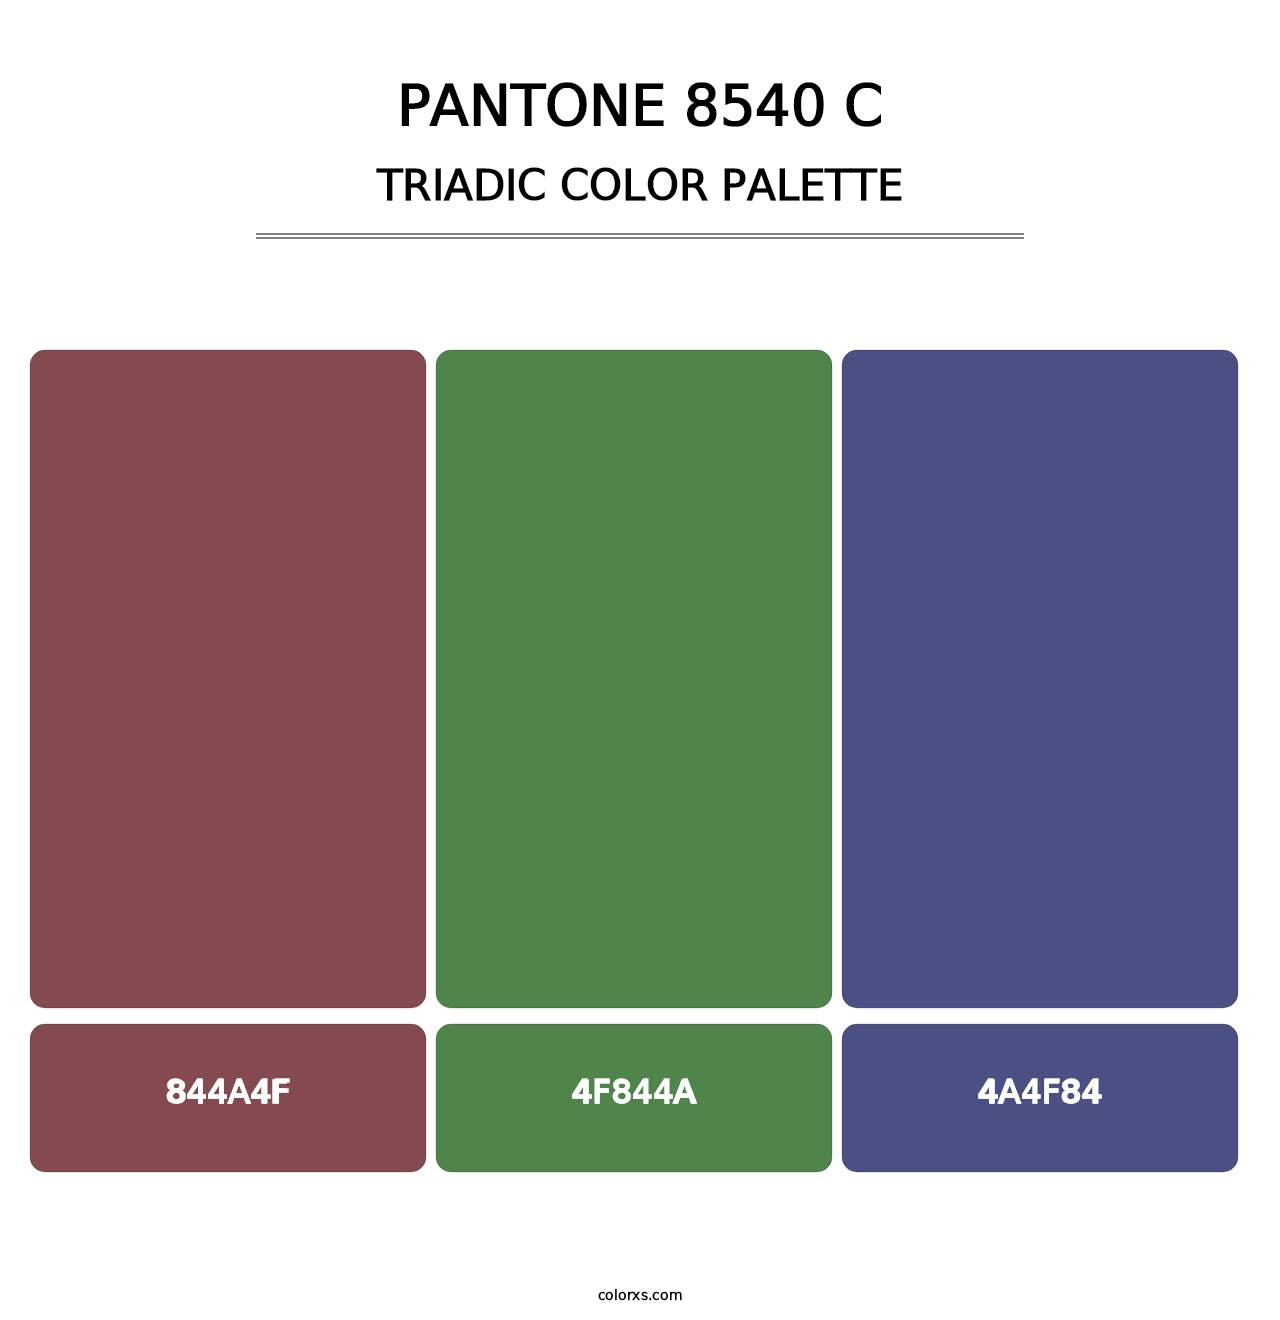 PANTONE 8540 C - Triadic Color Palette